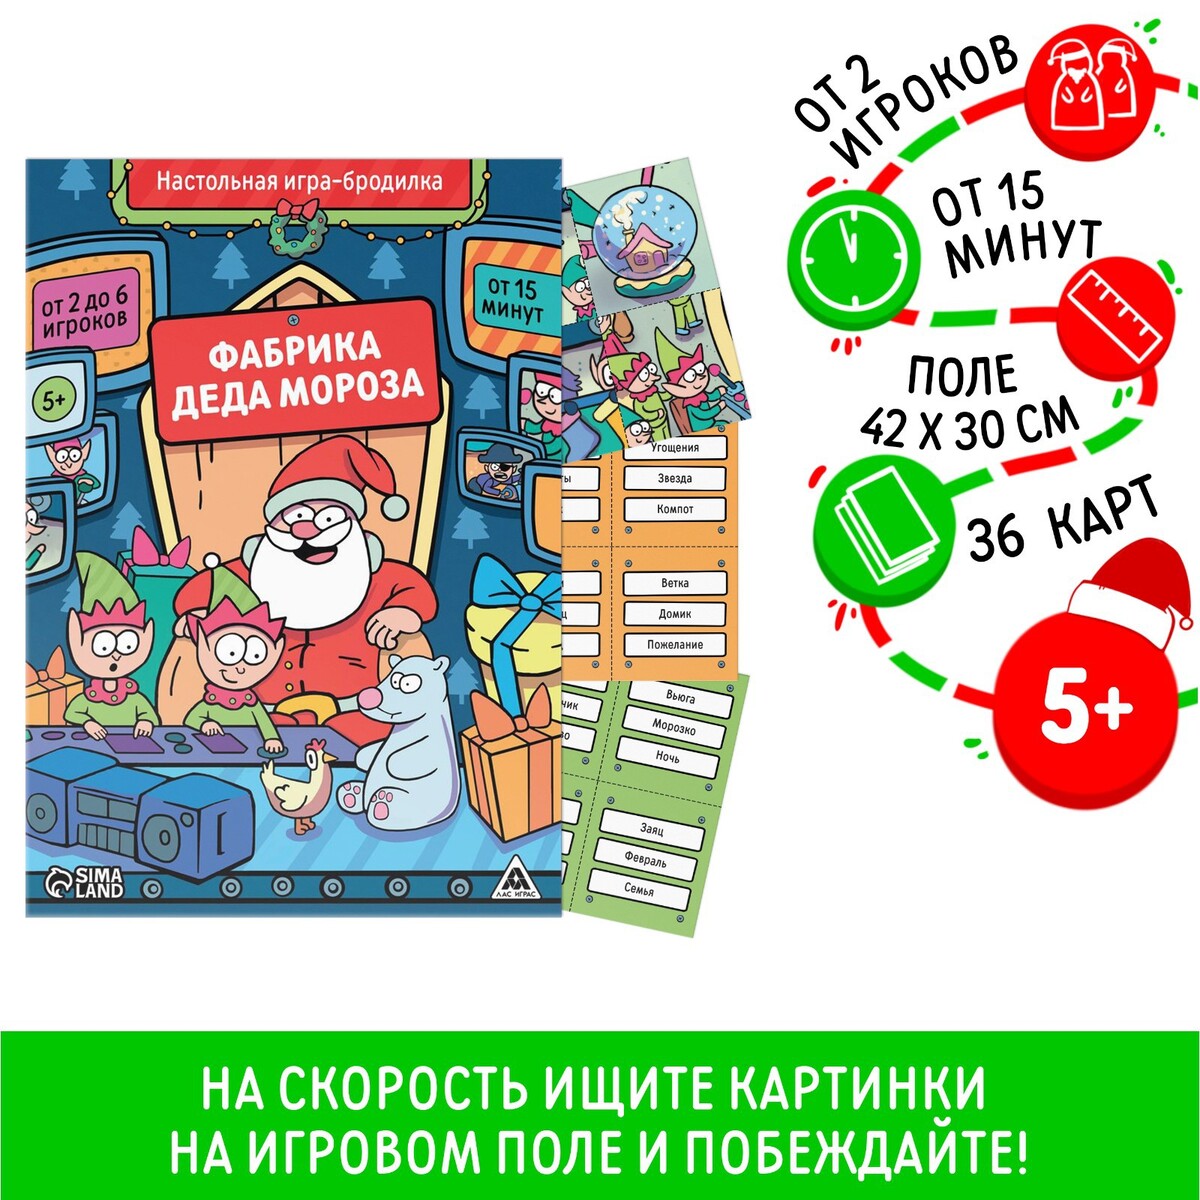 Новогодняя настольная игра-бродилка новогодняя игра на внимание и скорость окавока фабрика деда мороза 50 карт 5